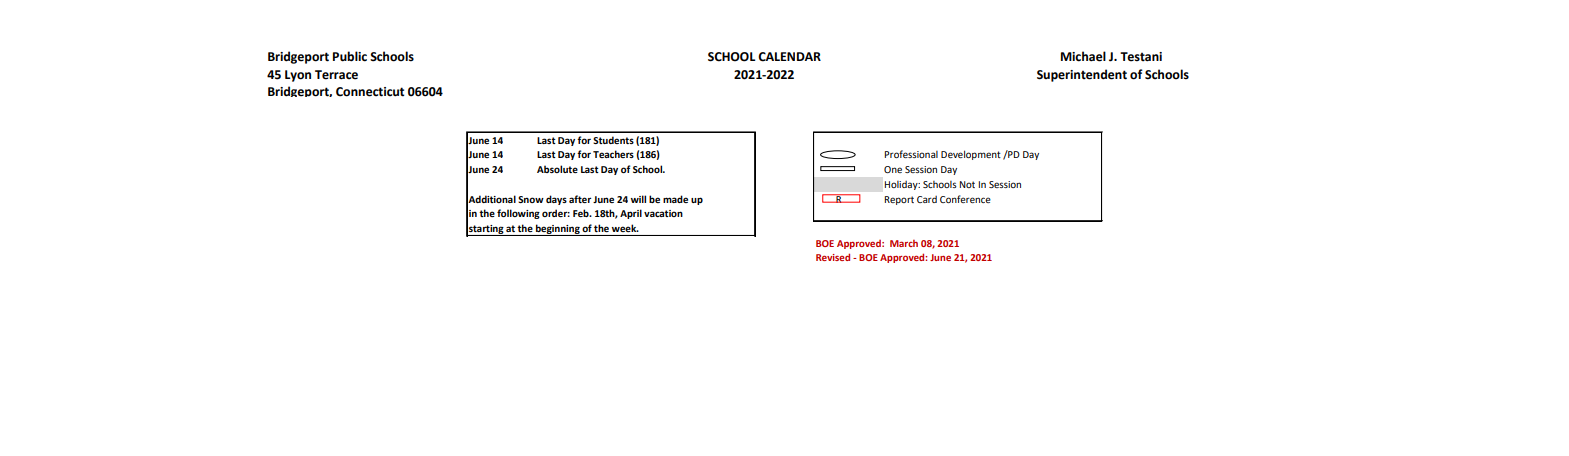 District School Academic Calendar Key for Hallen School